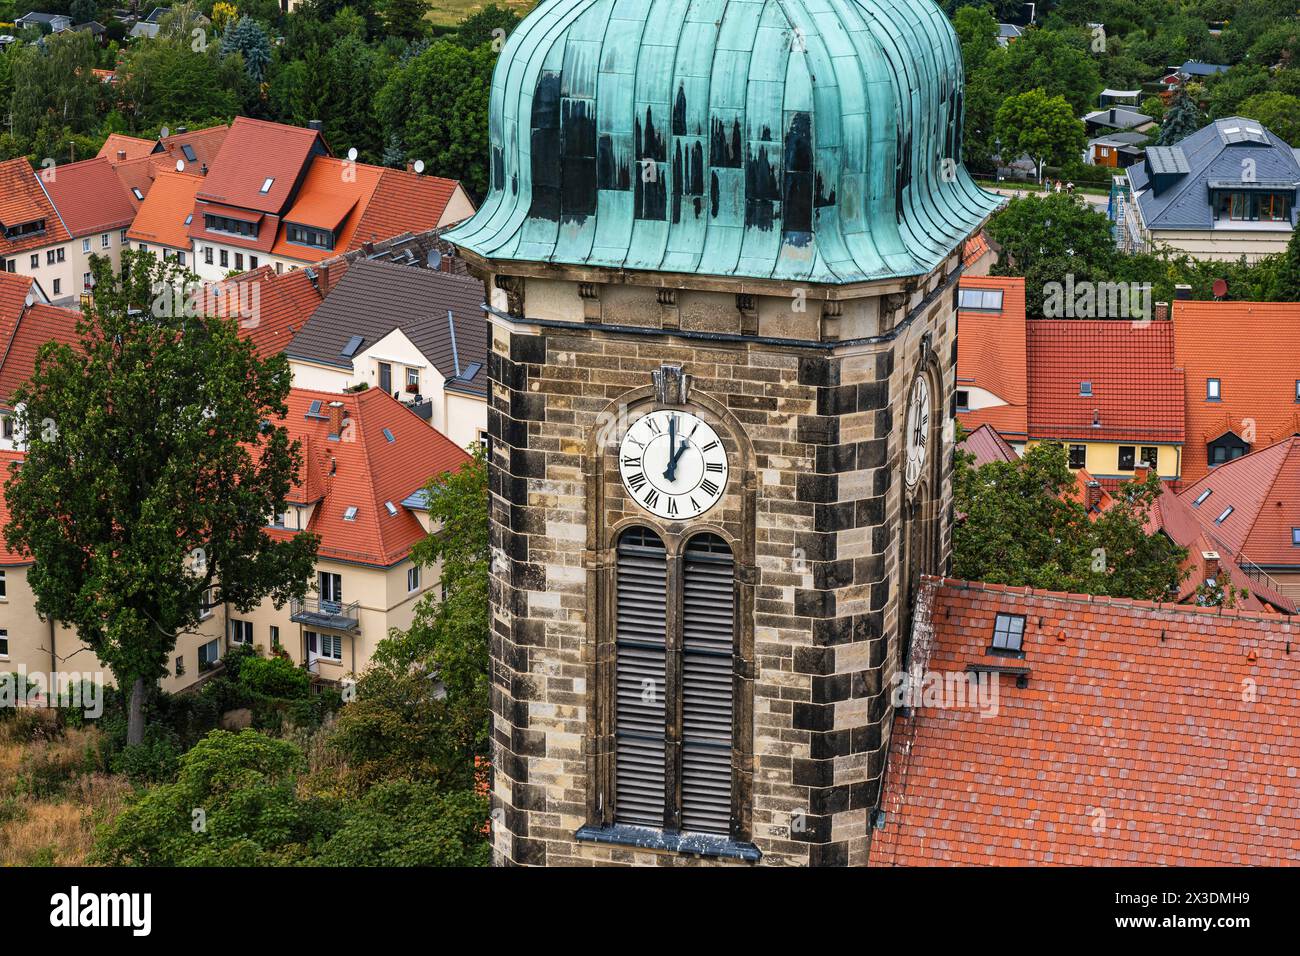 Stolpen, Sachsen, Deutschland um Eins, 13 Uhr, Jetzt schlägts aber 13 oder 60 Minuten nach Zwölf, Uhrzeit an der Turmuhr der Stadtkirche Stolpen, Sach Foto Stock